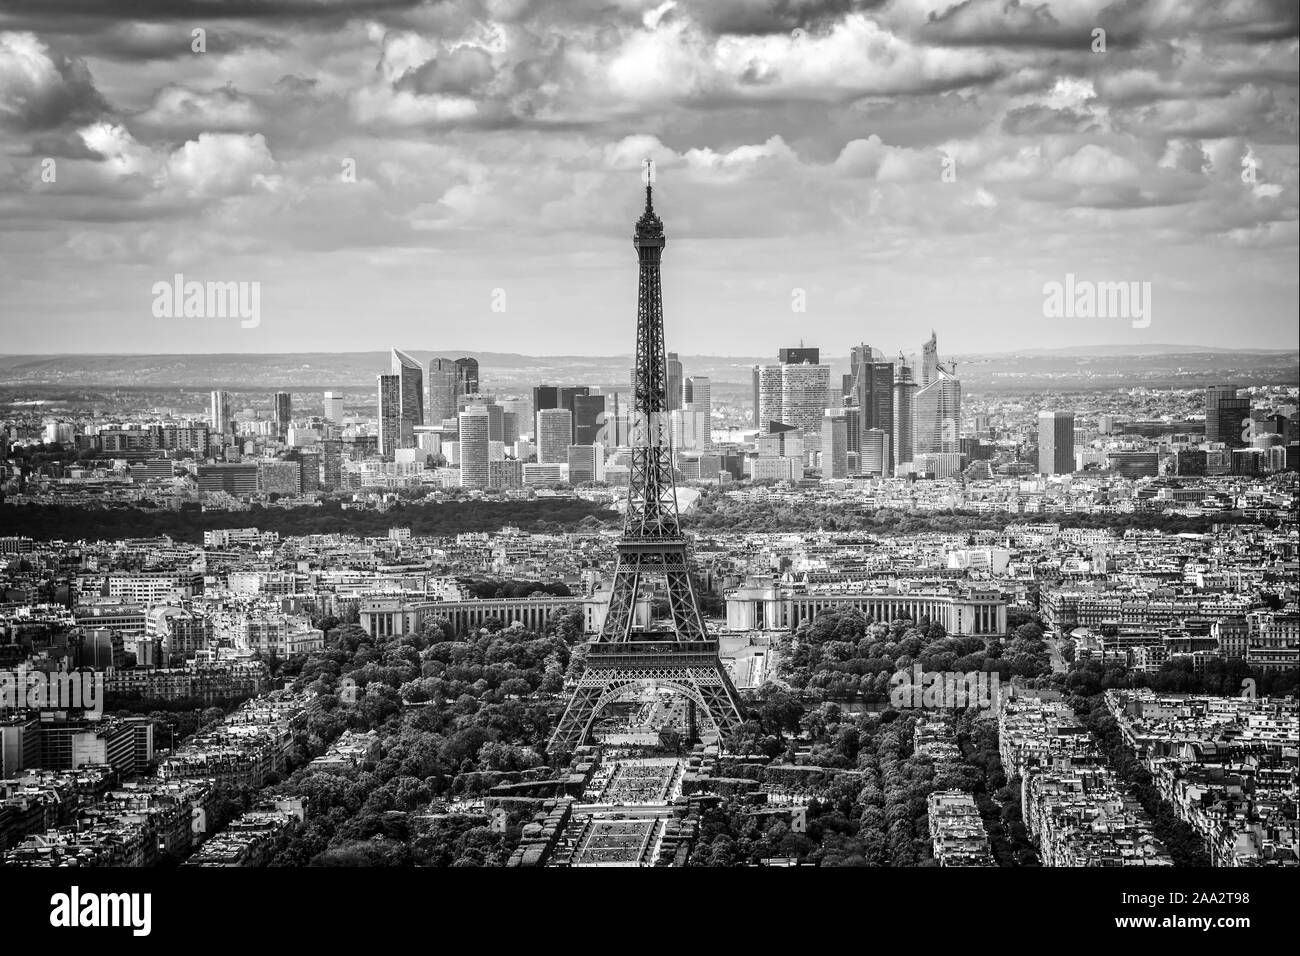 Antenna vista panoramica di Parigi con la torre Eiffel e il quartiere degli affari della Defense skyline, in bianco e nero Foto Stock